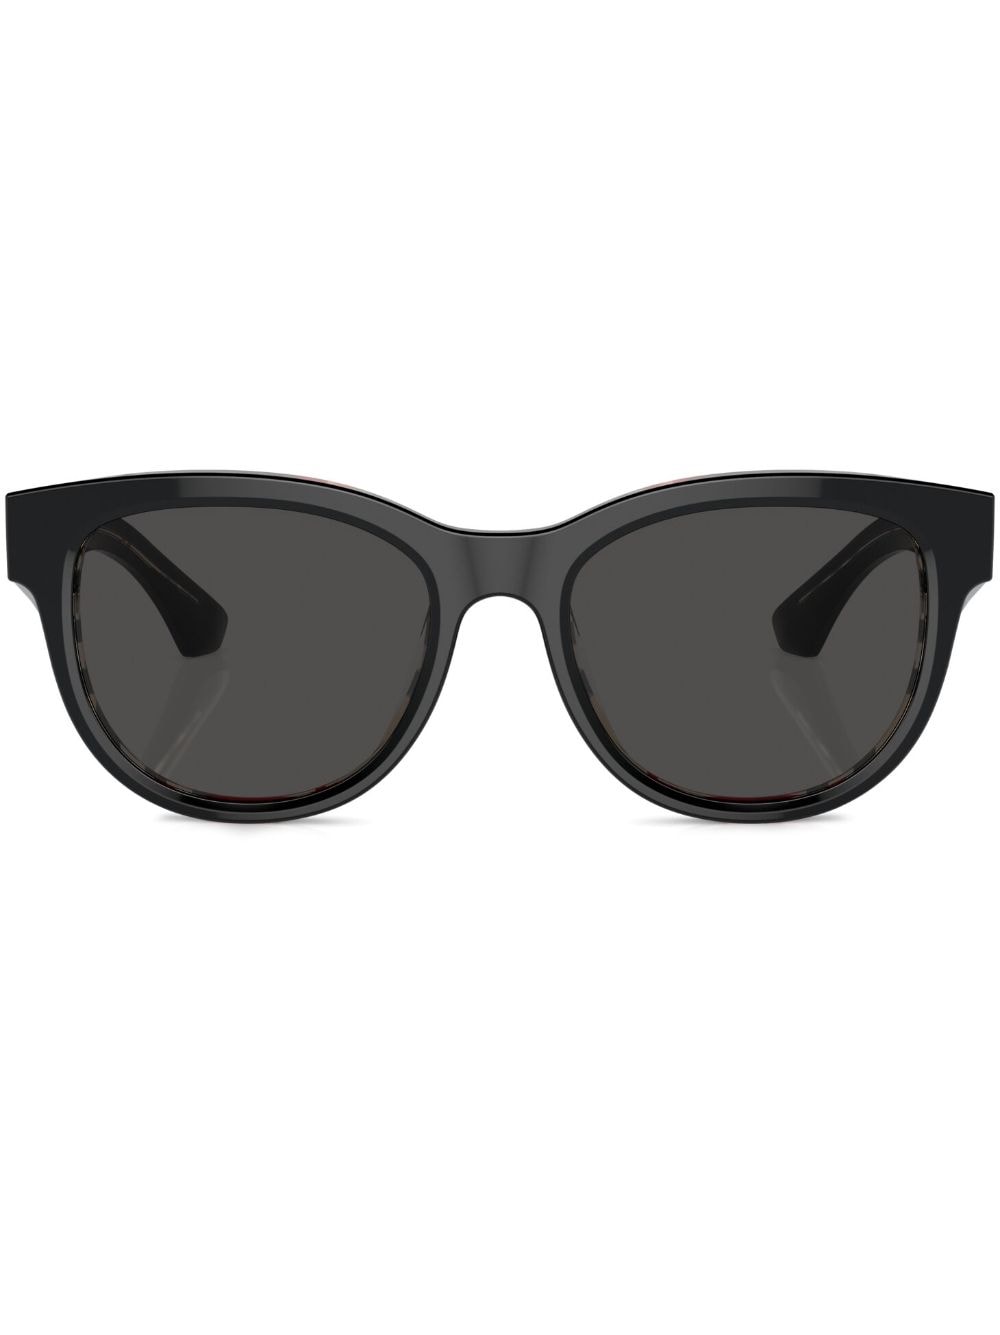 Burberry Eyewear Sonnenbrille mit breitem Gestell - Schwarz von Burberry Eyewear